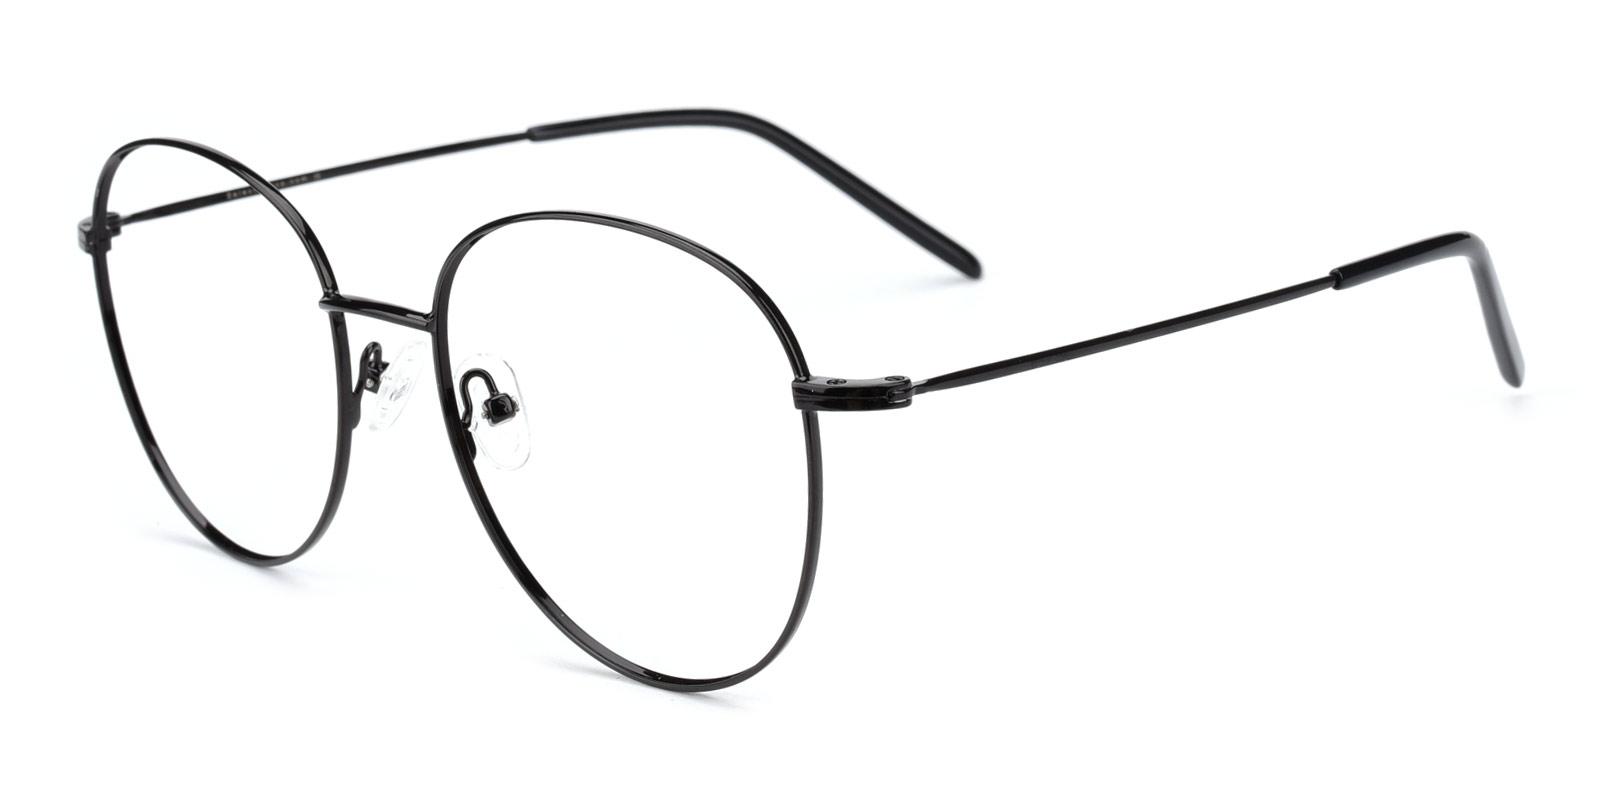 Enid-Black-Square / Round-TR / Metal-Eyeglasses-detail